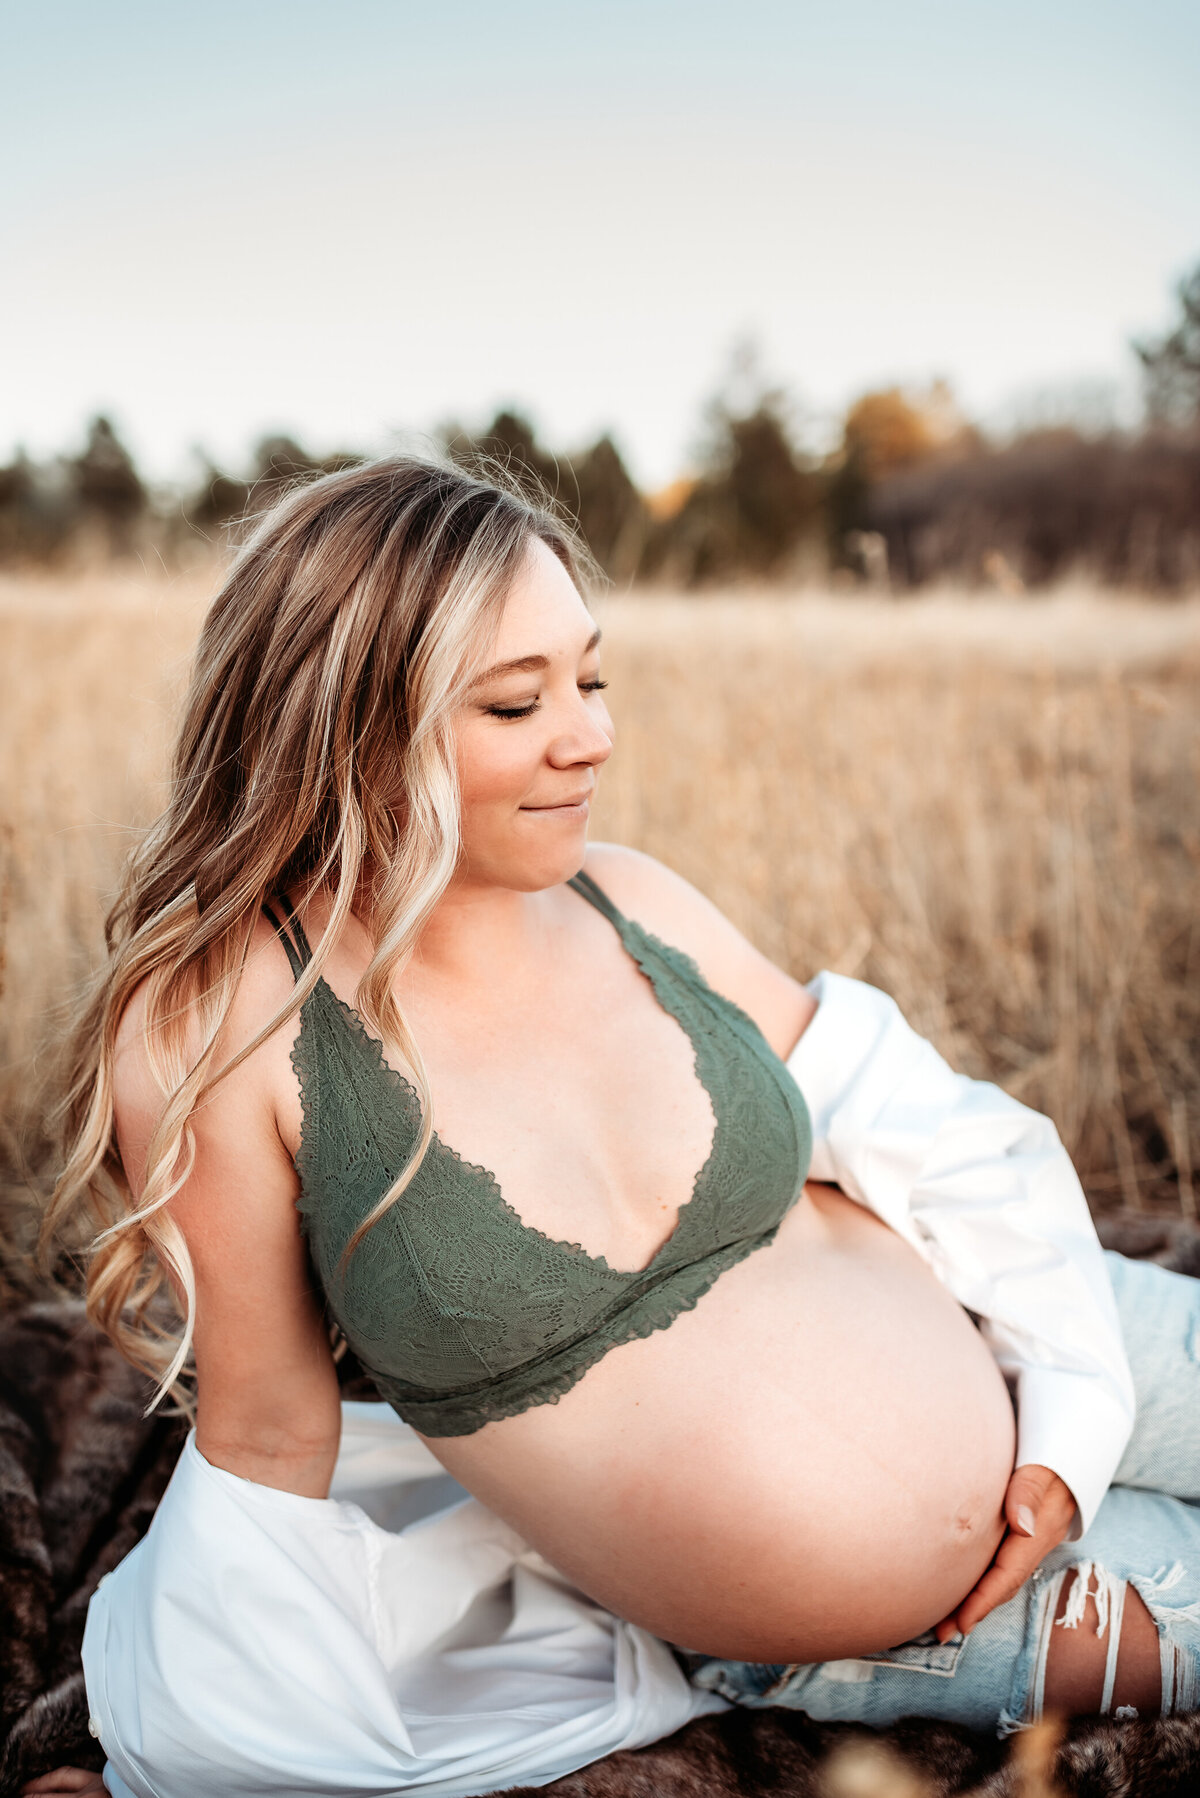 pregnant woman in bra sitting in field